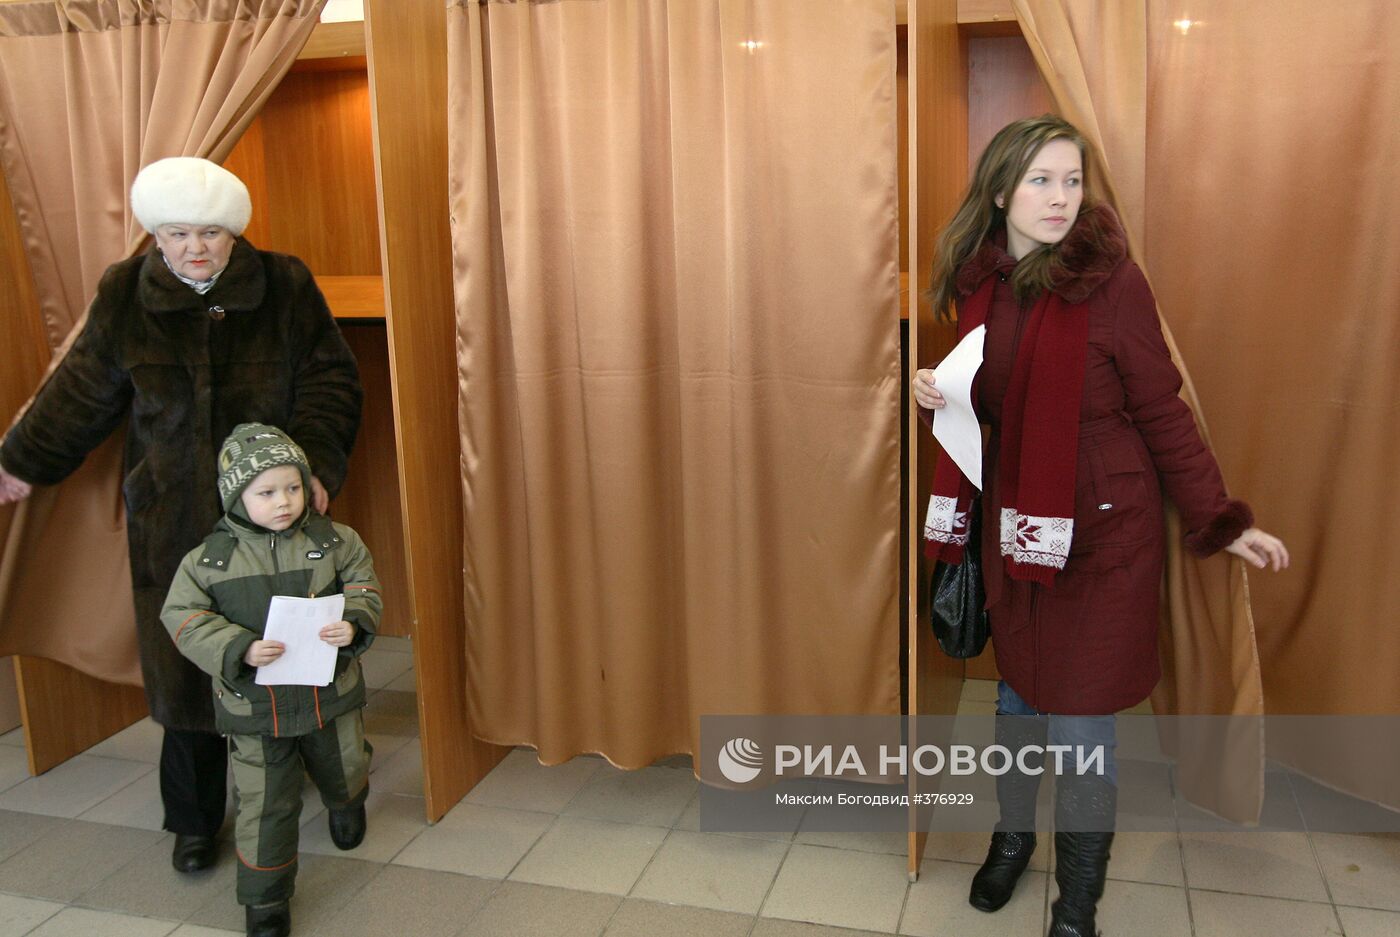 Выборы депутатов Государственного Совета Республики Татарстан